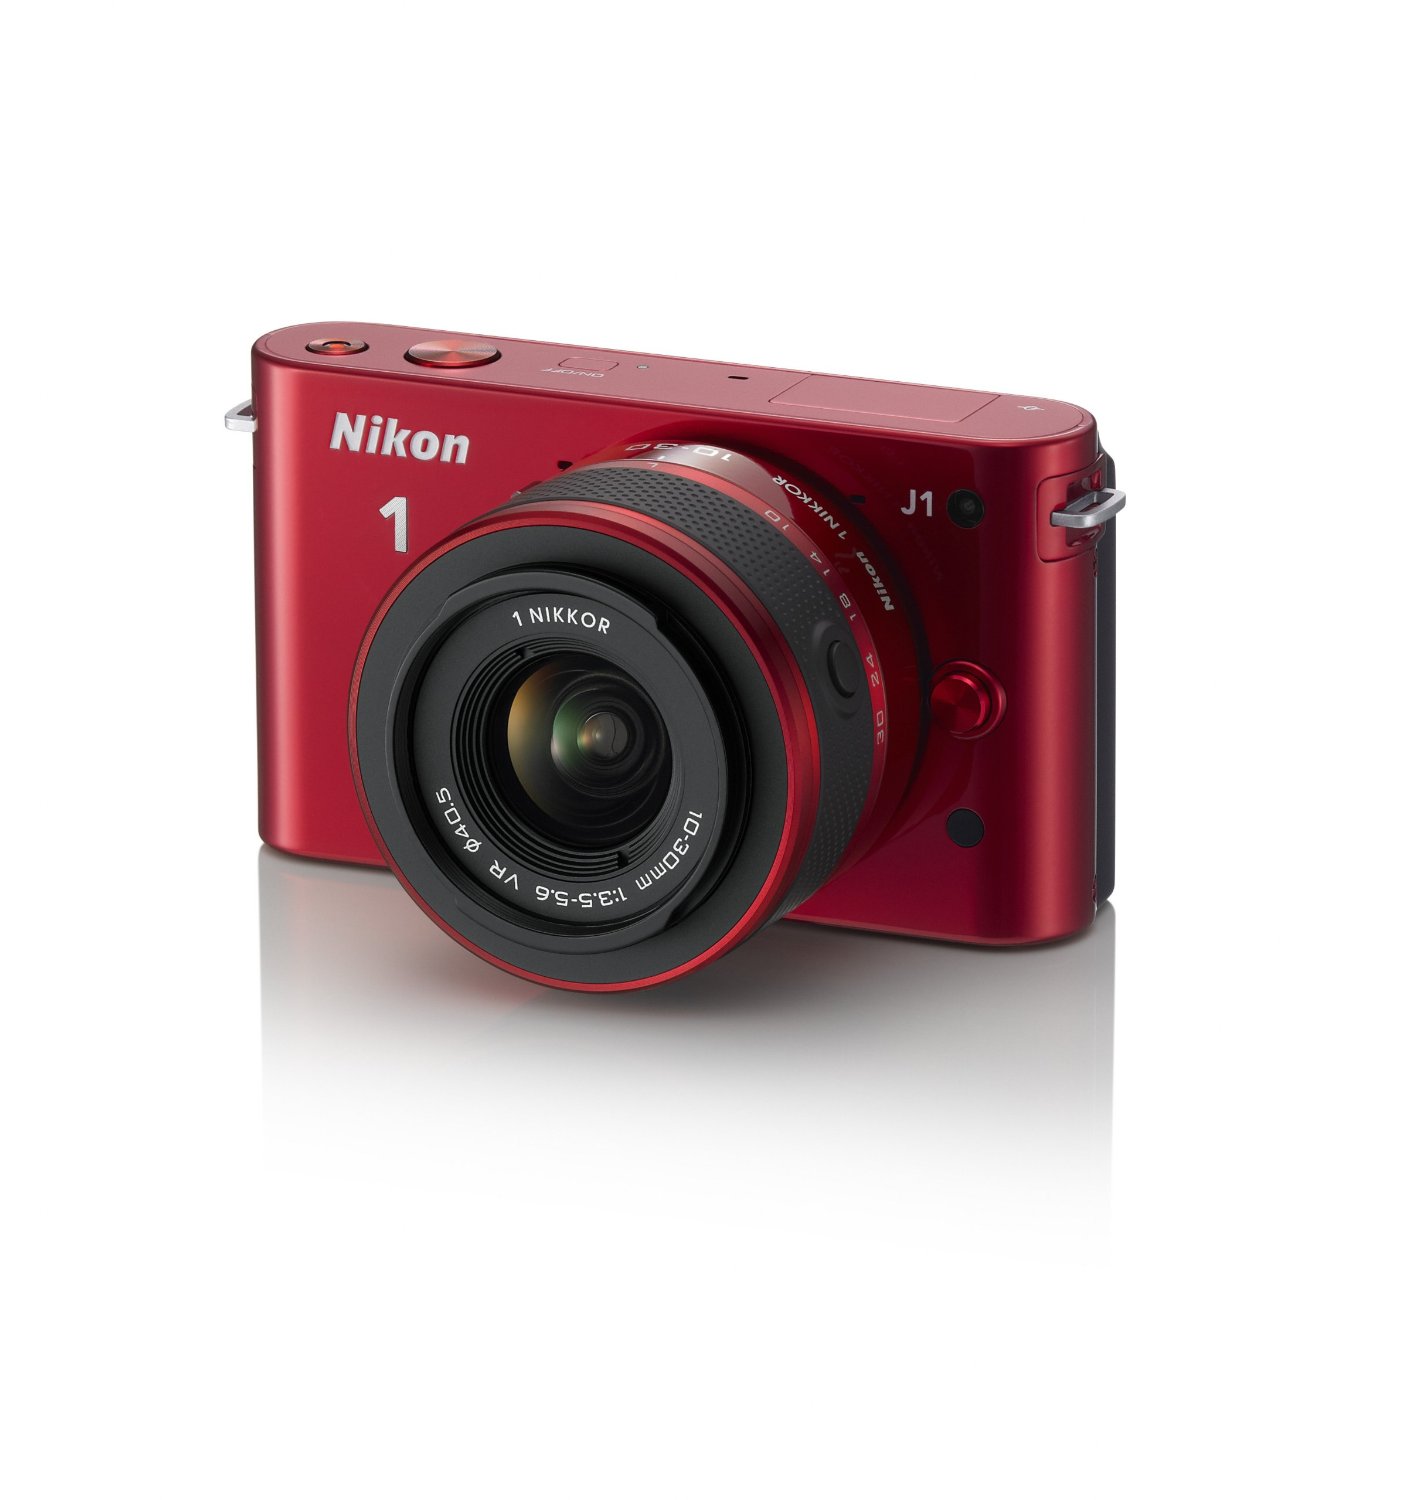 尼康 Nikon 1 J1 10.1 MP 高清微單數碼相機帶10-30mm VR 1 NIKKOR鏡頭套裝  $396.95